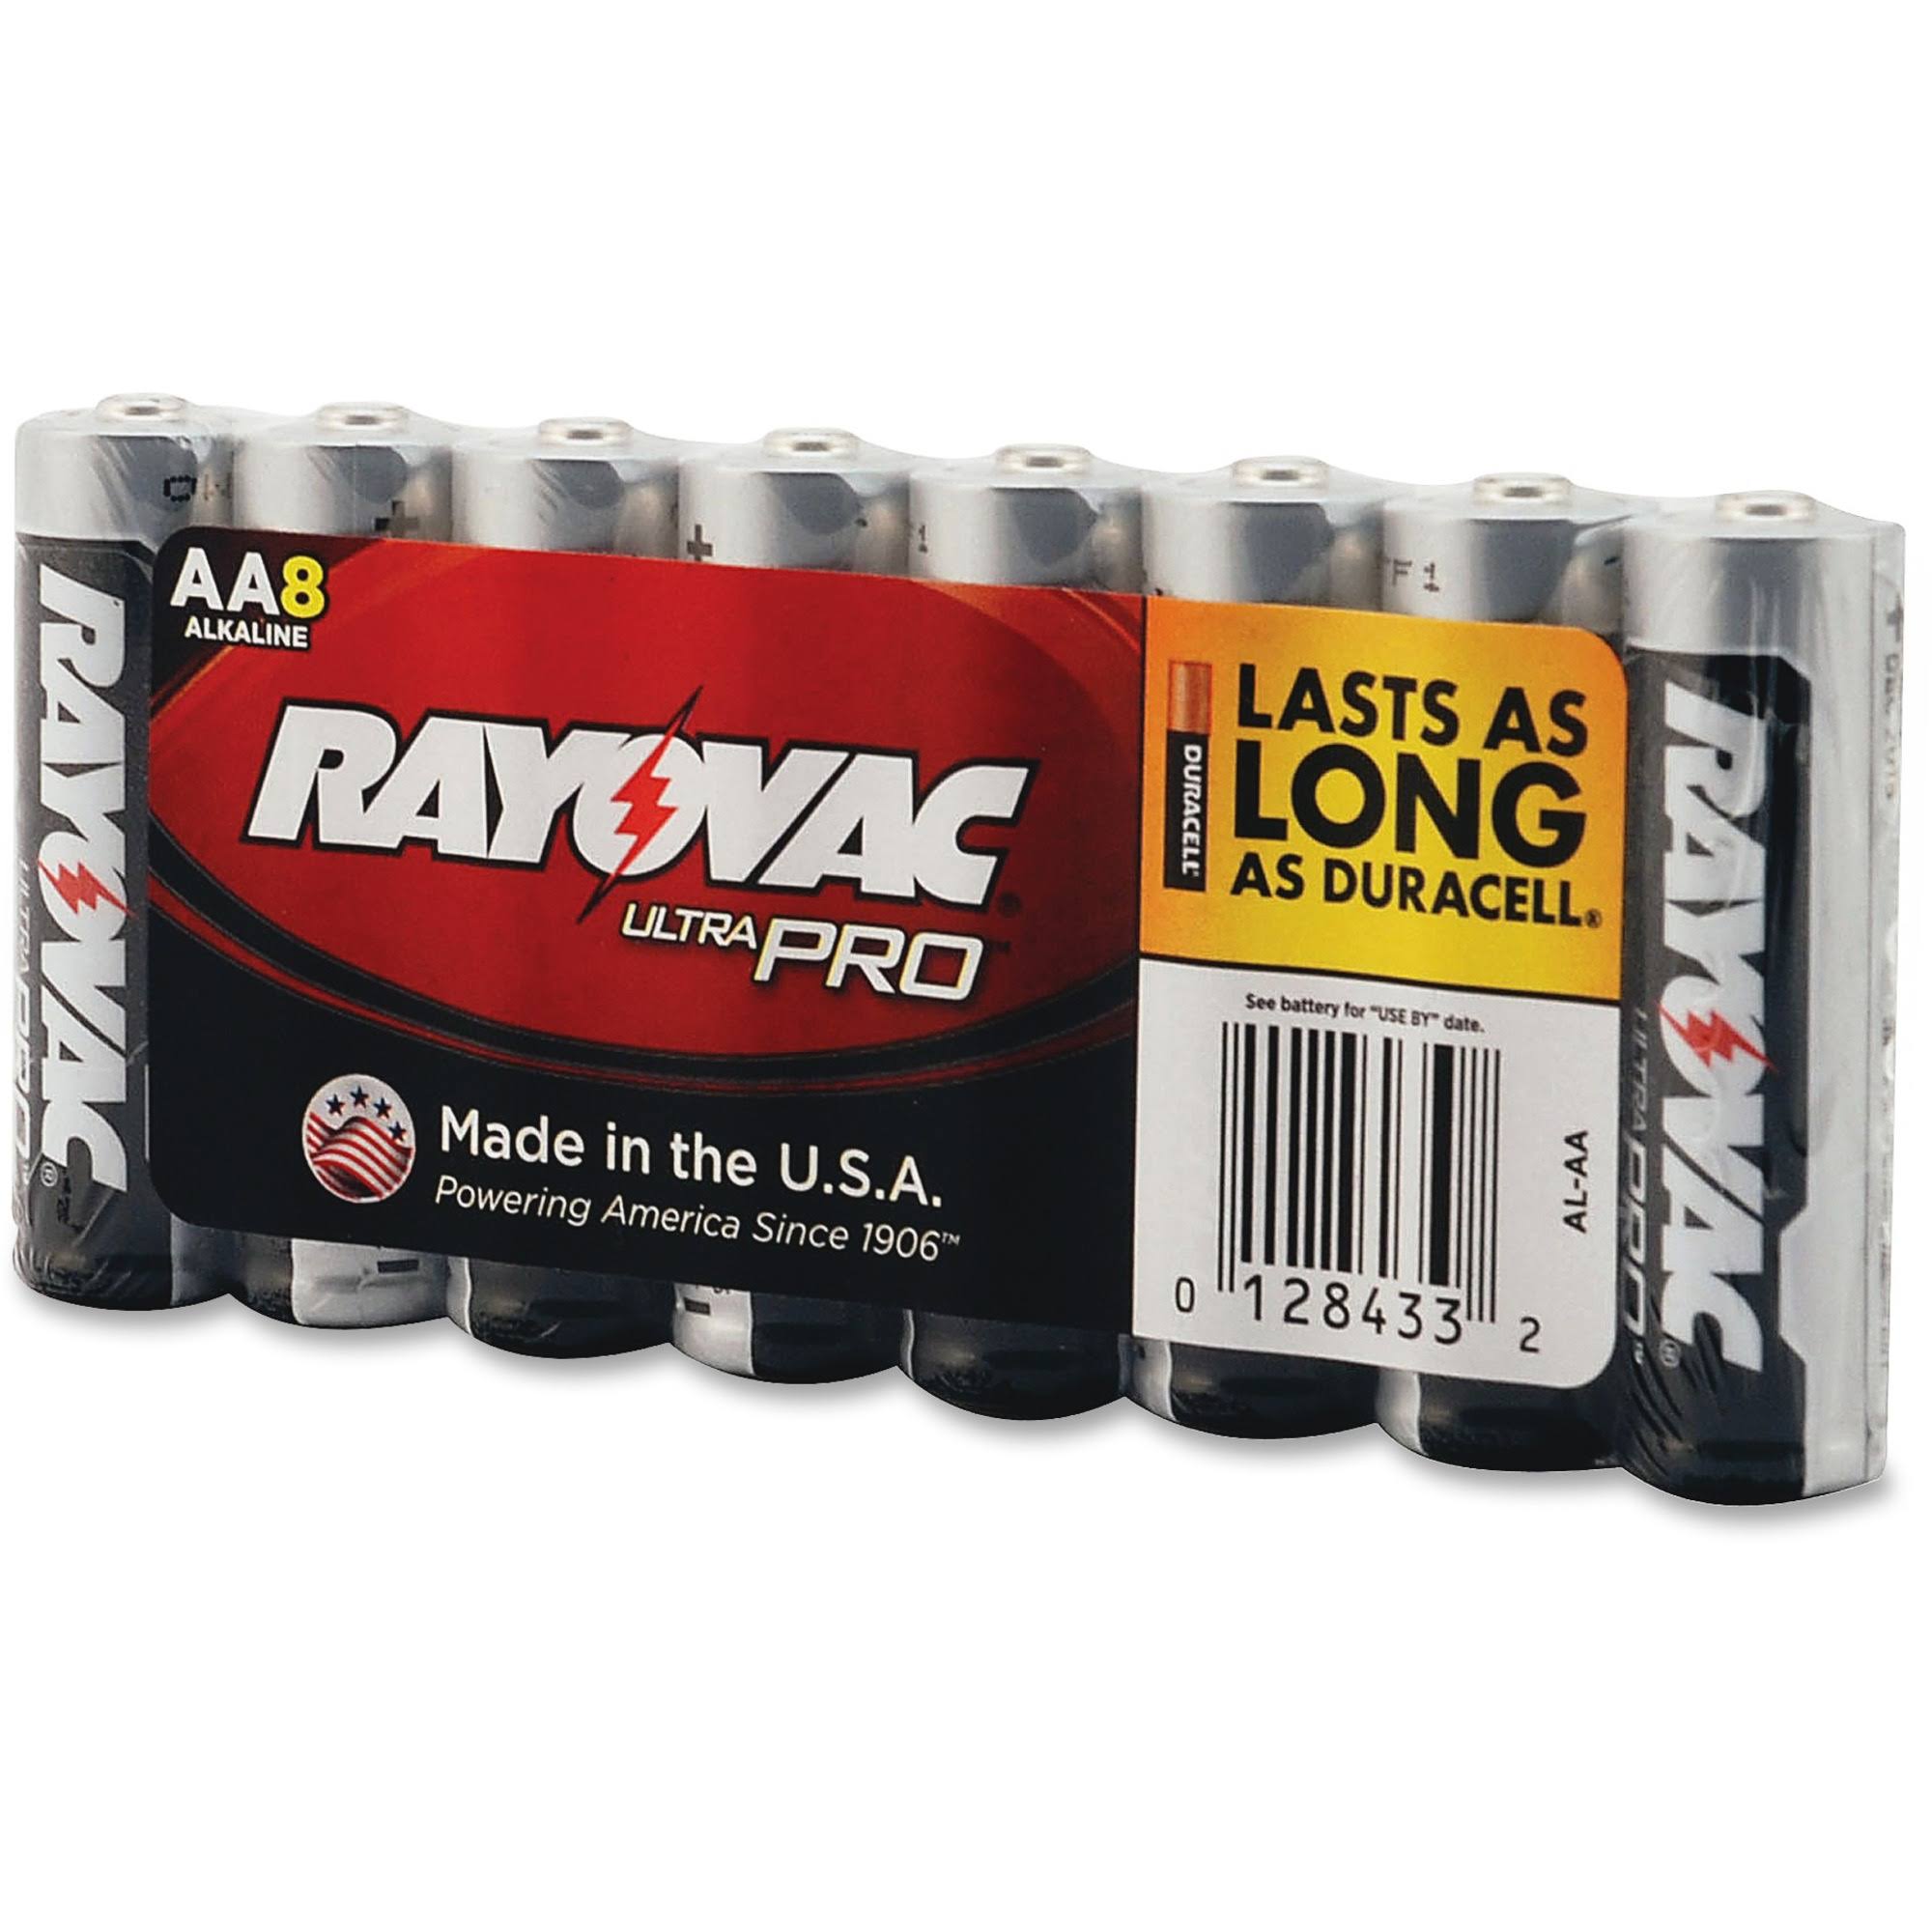 Rayovac Ultra Pro Batteries - Size AA, 8 Pack